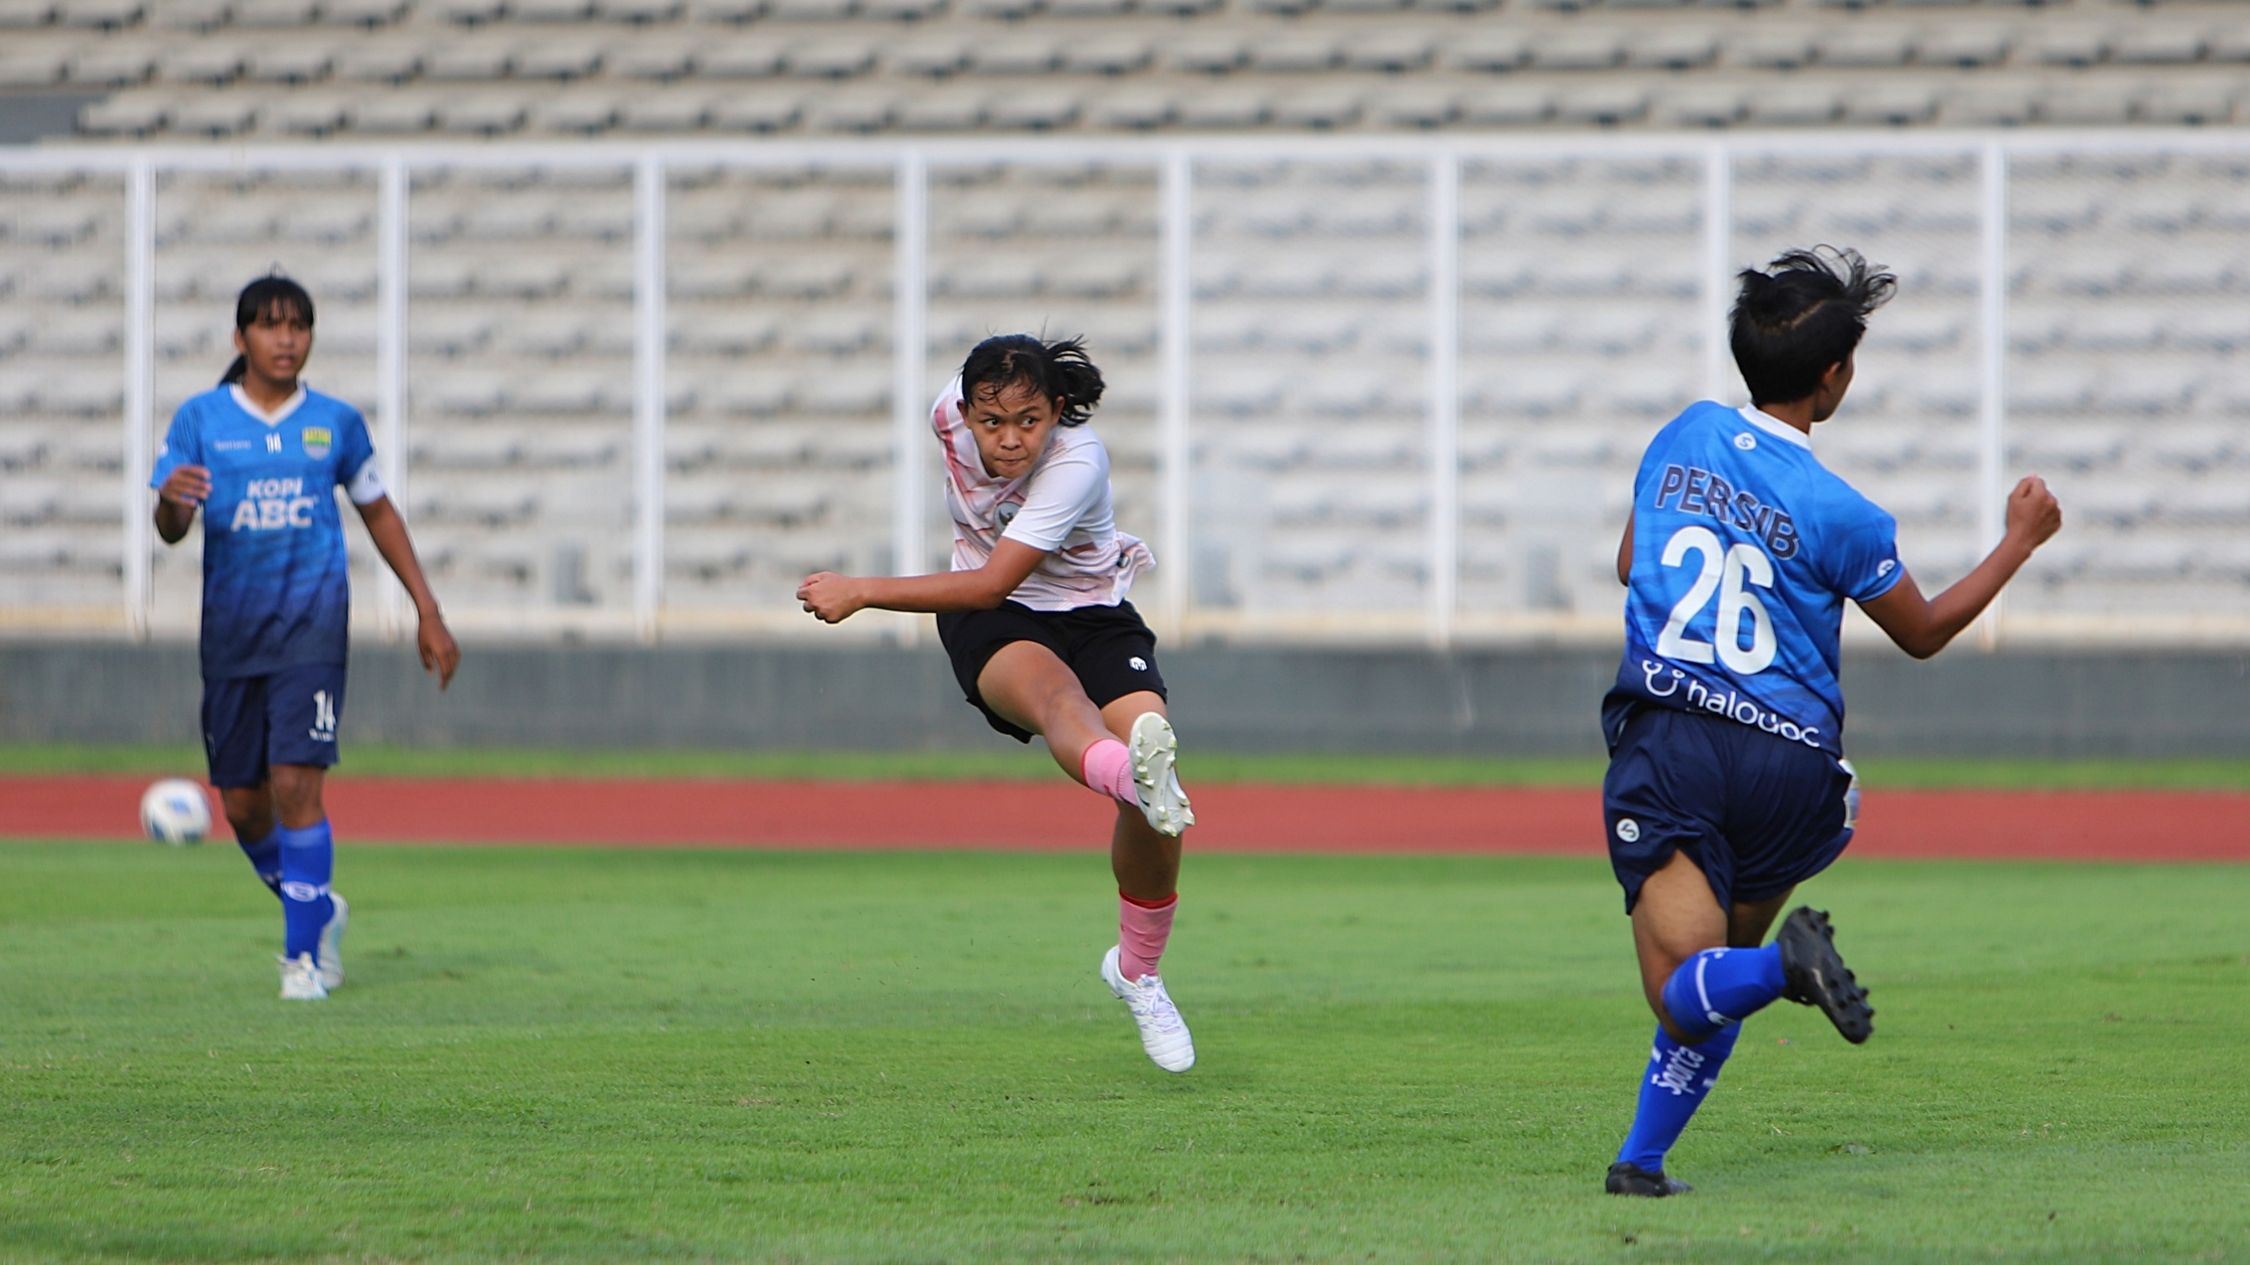 Aksi pemain timnas putri Indonesia, Helsya Maeisyaroh, saat berhadapan  Persib Bandung putri dilaksanakan pada Kamis (13/1/20222) di Stadion Madya, Senayan, Jakarta Pusat.